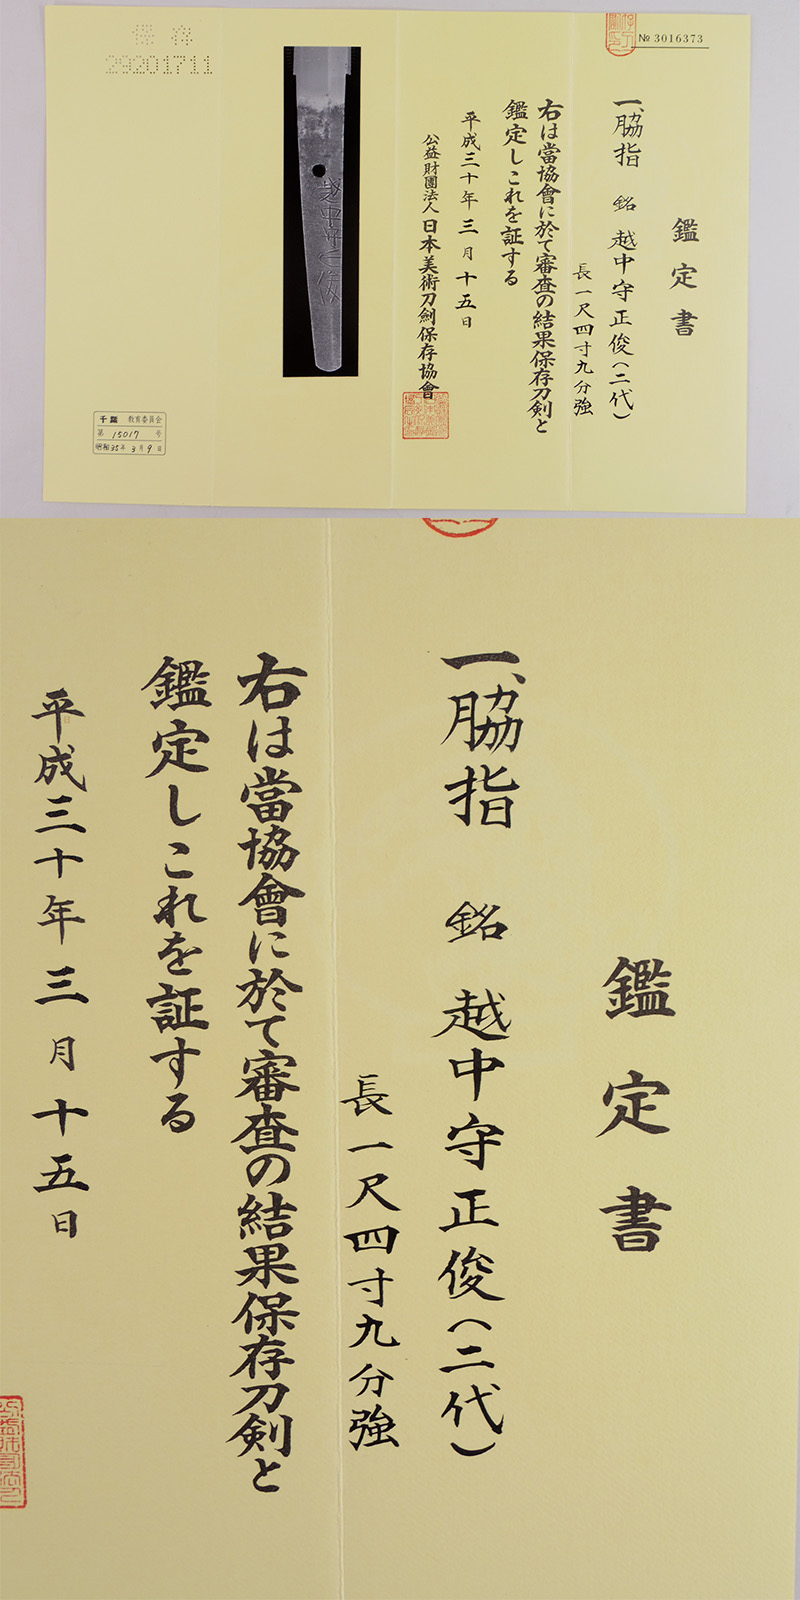 脇差　越中守正俊(二代) (新刀上作) Picture of Certificate